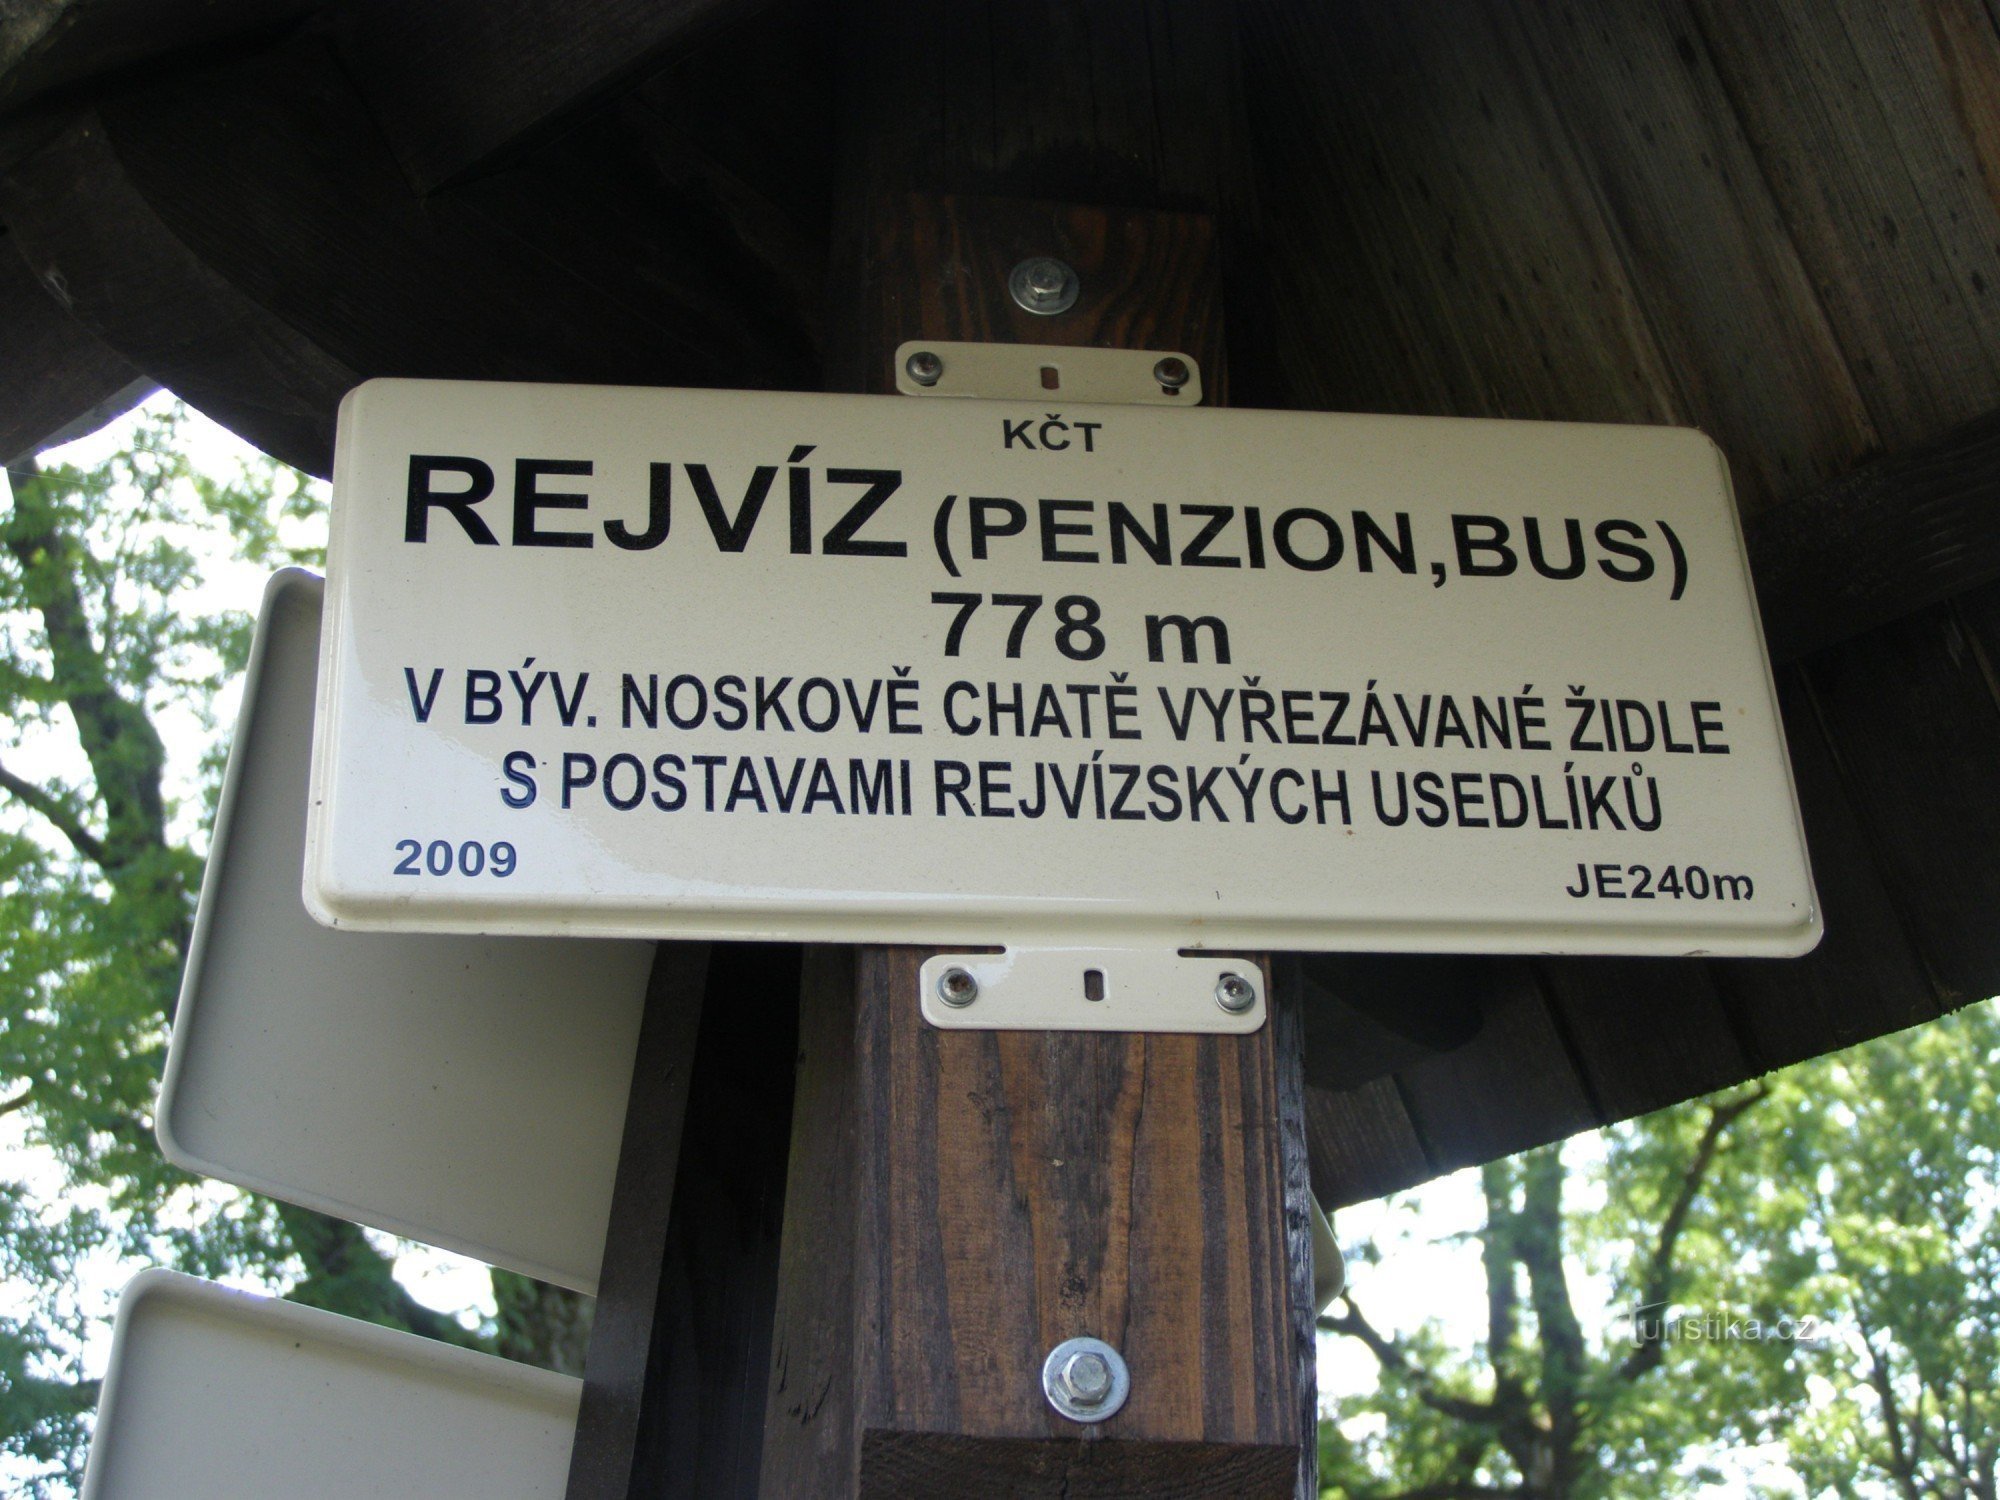 turistkorsvej - Rejvíz, bus, Pension Rejvíz